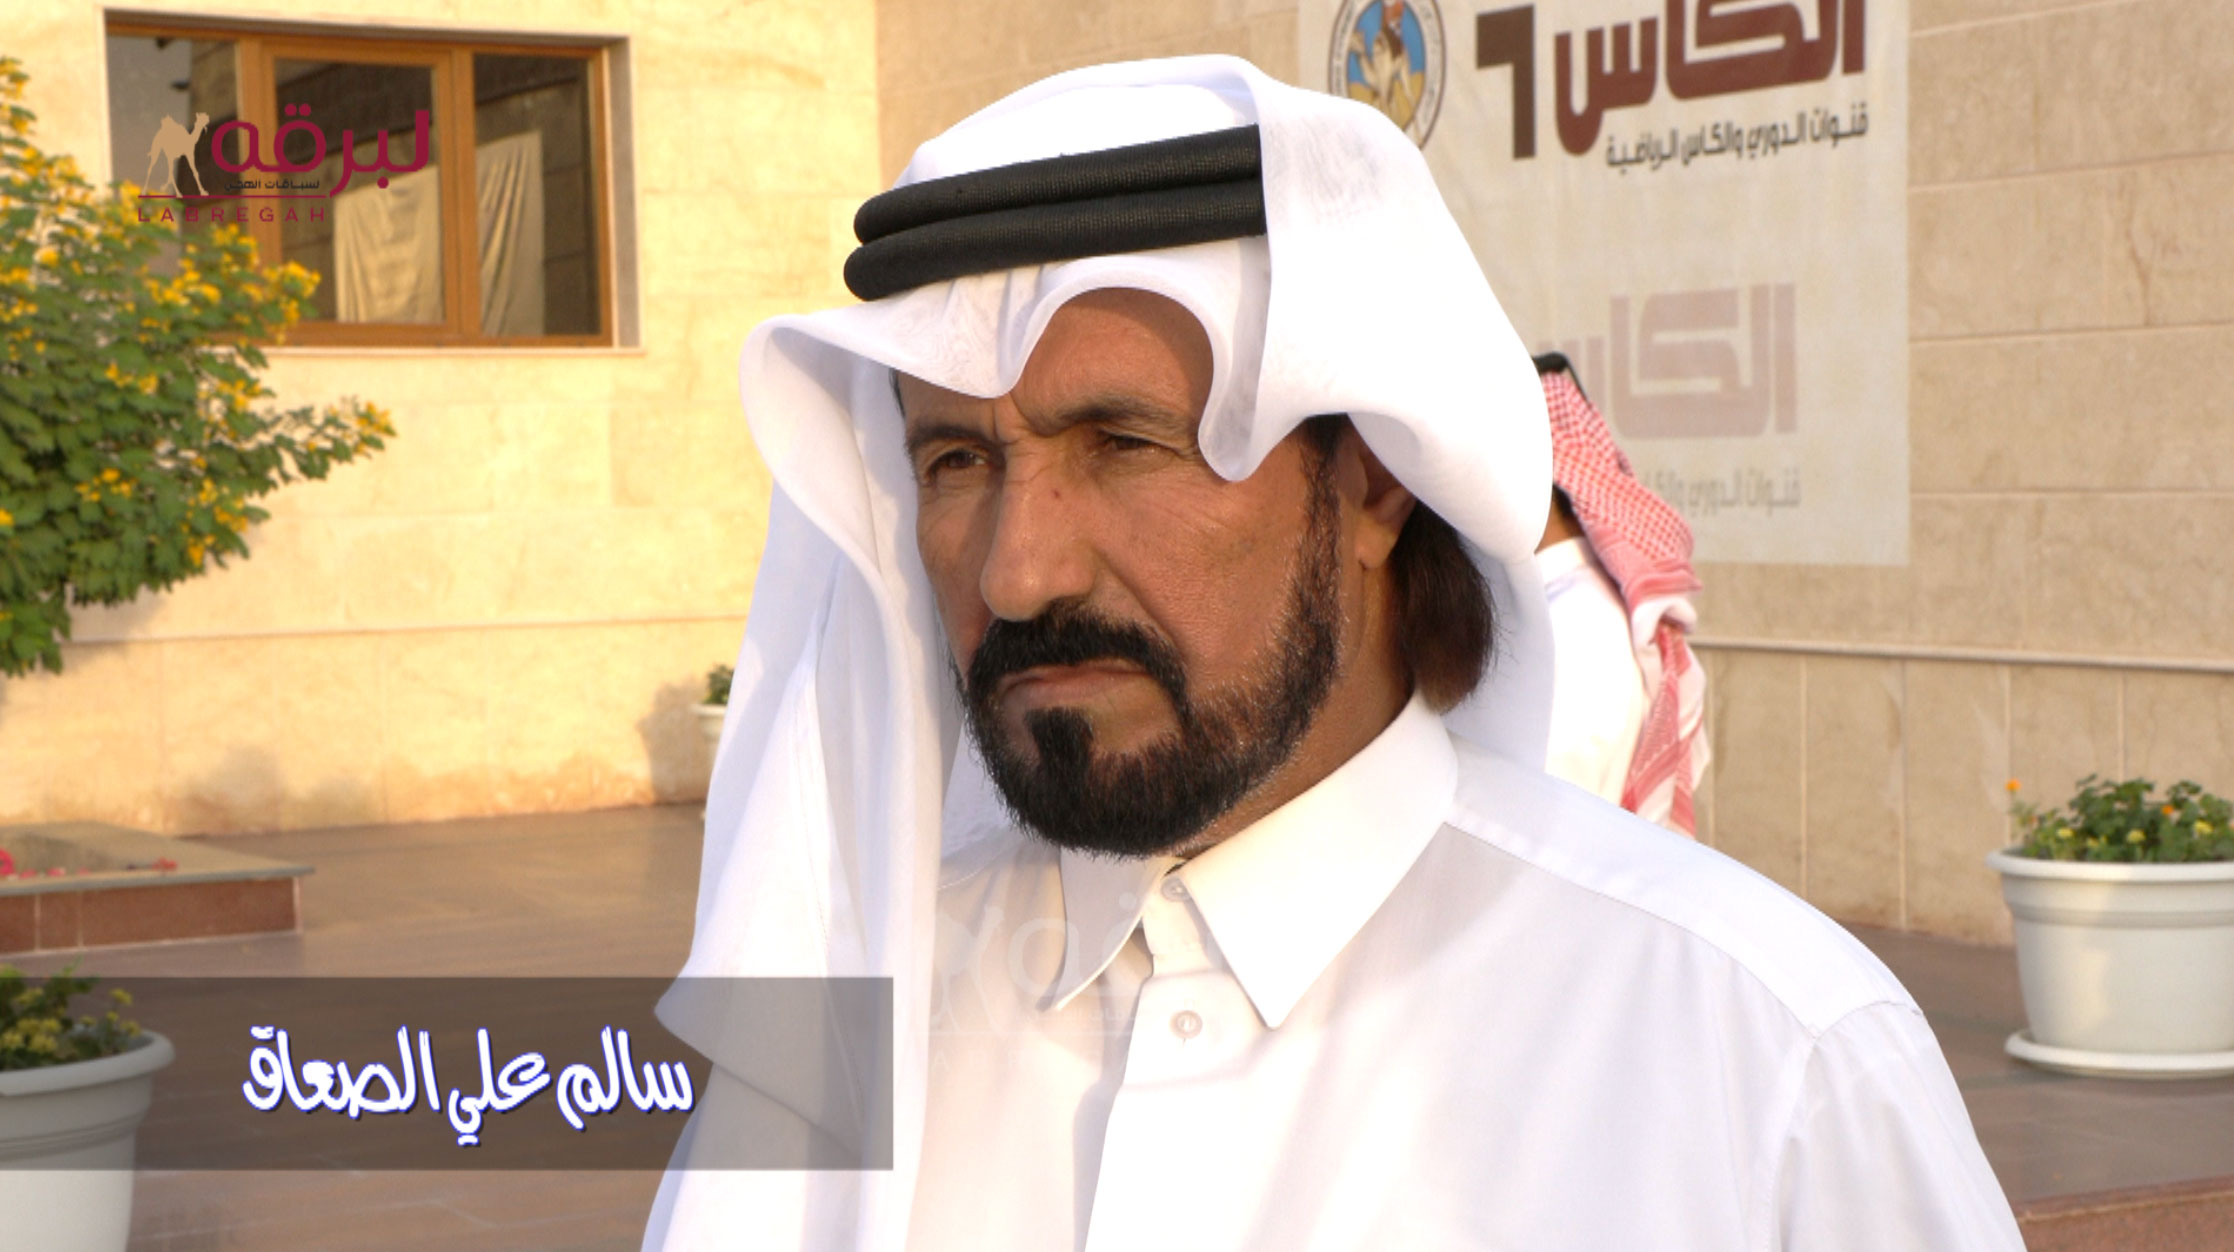 لقاء مع سالم علي الصعاق.. الخنجر الفضي حقايق قعدان (إنتاج) مهرجان المؤسس ١٨-١٢-٢٠٢١